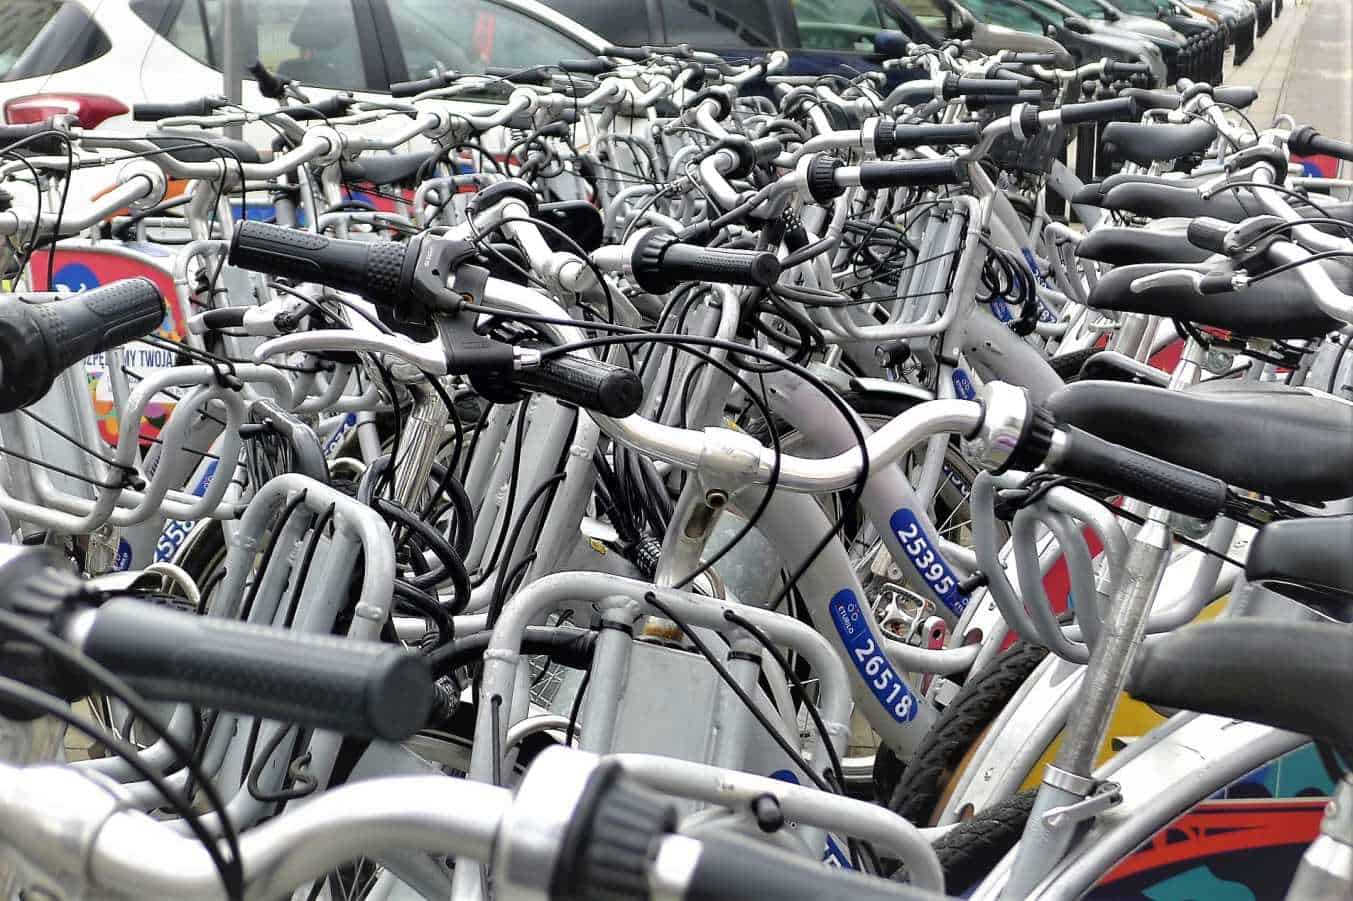 boom Slightly draft Rower miejski na nowo. Jakich zmian wymaga w Polsce bike sharing?